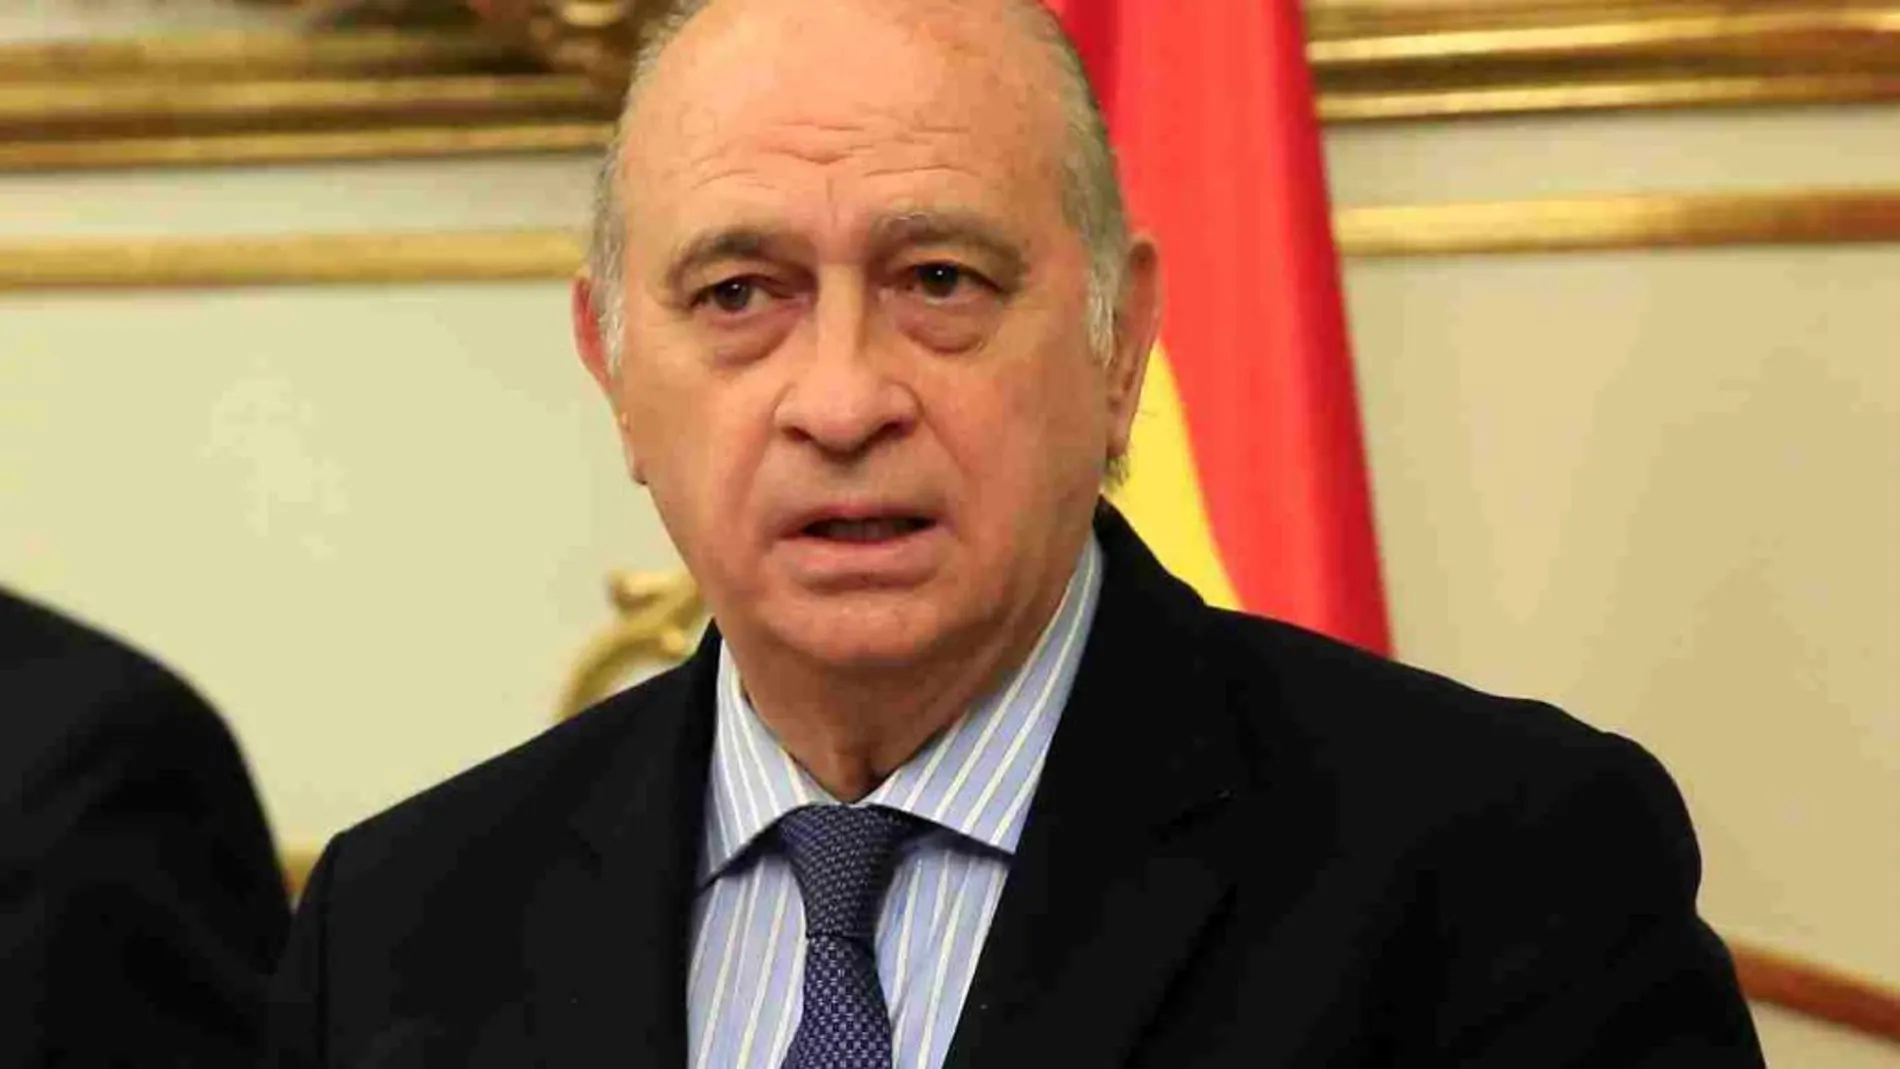 El exministro de Interior, Jorge Fernández Díaz